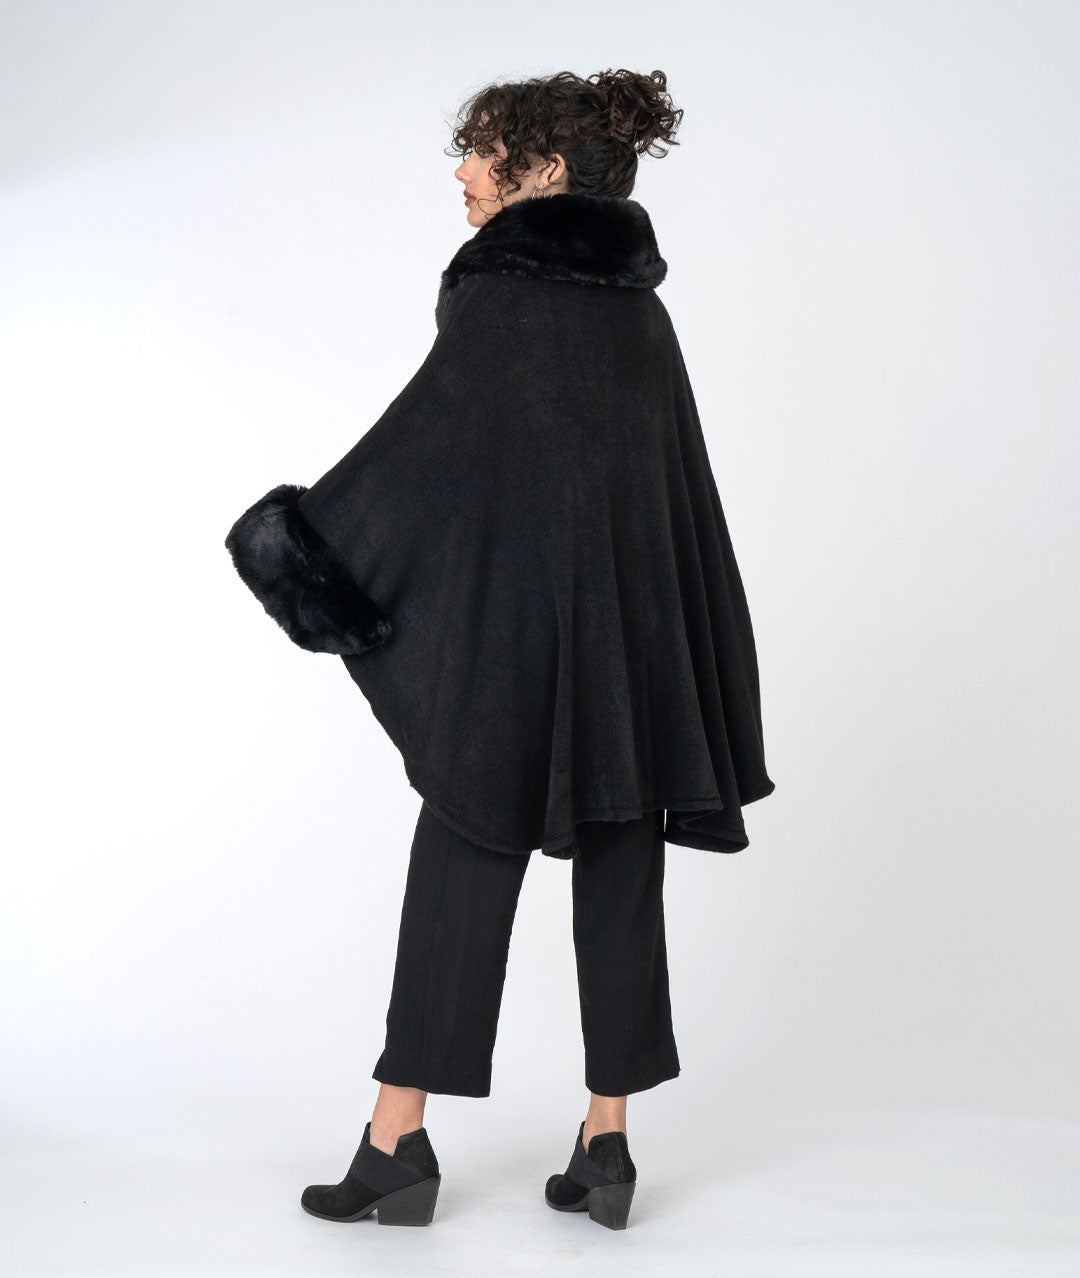 back view of black fur trimmed cape on model